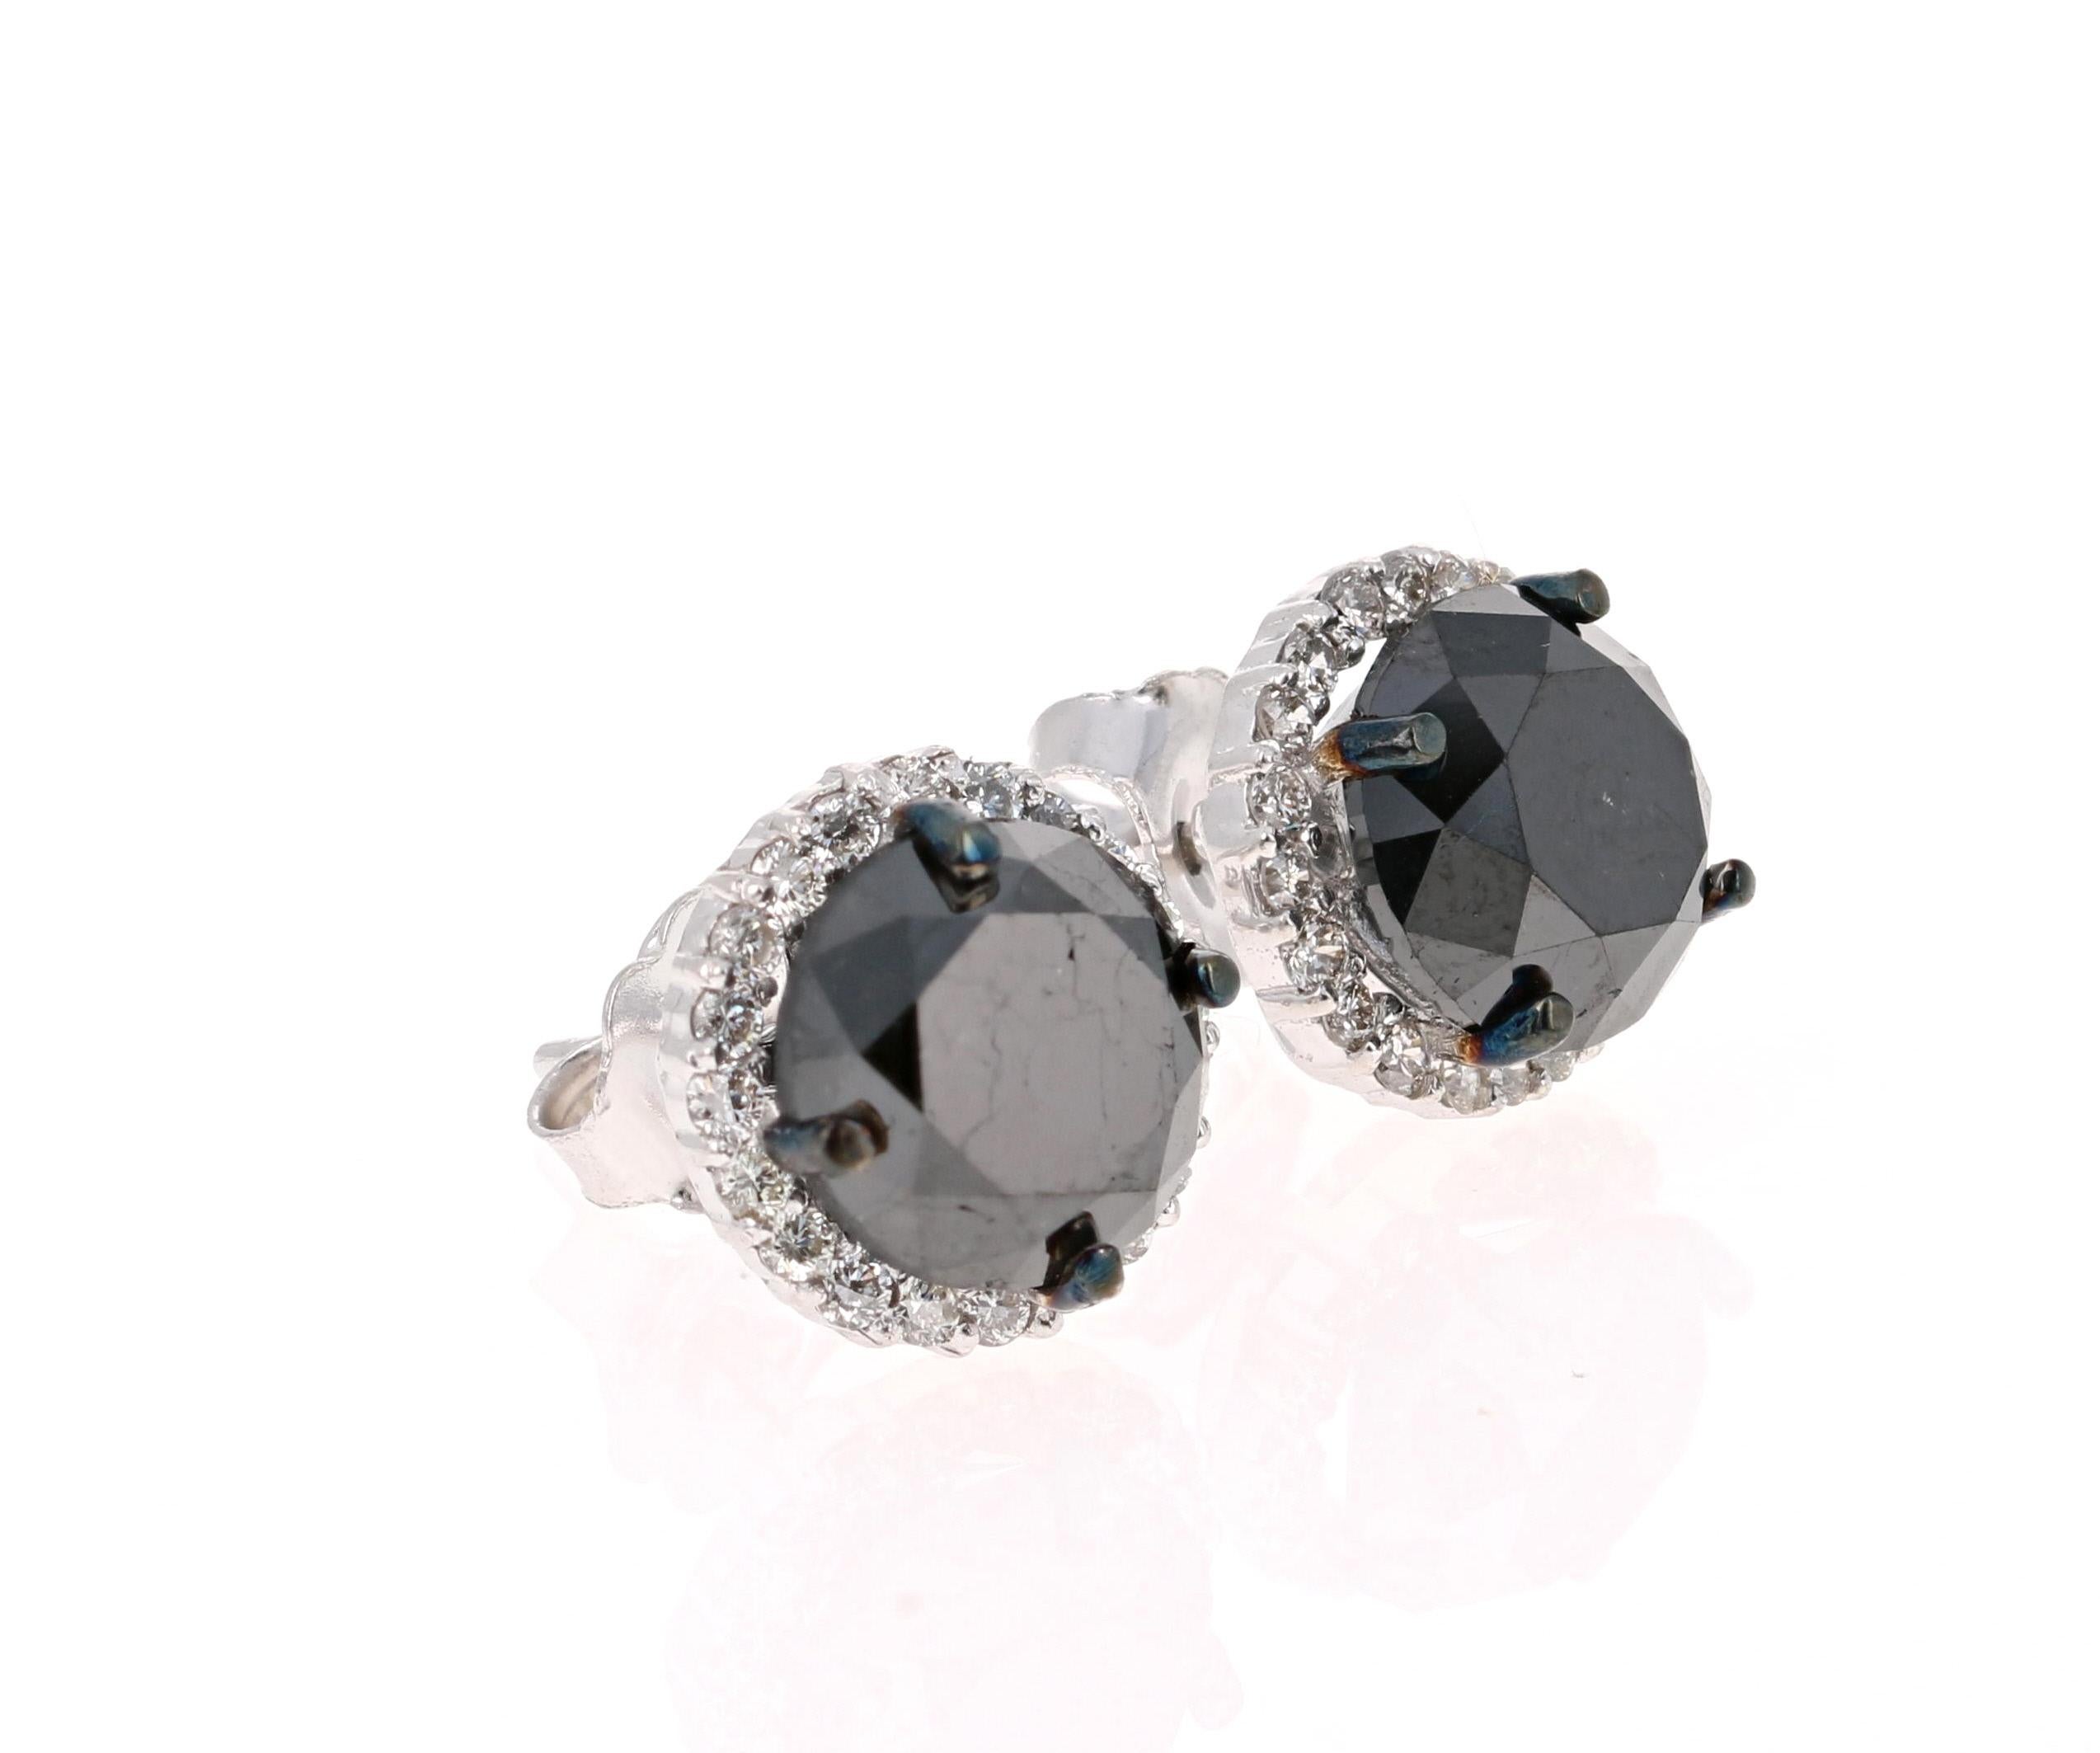  Boucles d'oreilles en diamant noir

2 magnifiques diamants noirs pesant 5,18 carats sont entourés de 40 diamants ronds pesant 0,39 carat. (Clarté : VS, Couleur : H)  Le poids total en carats des boucles d'oreilles est de 5.57 carats. 

Ils sont